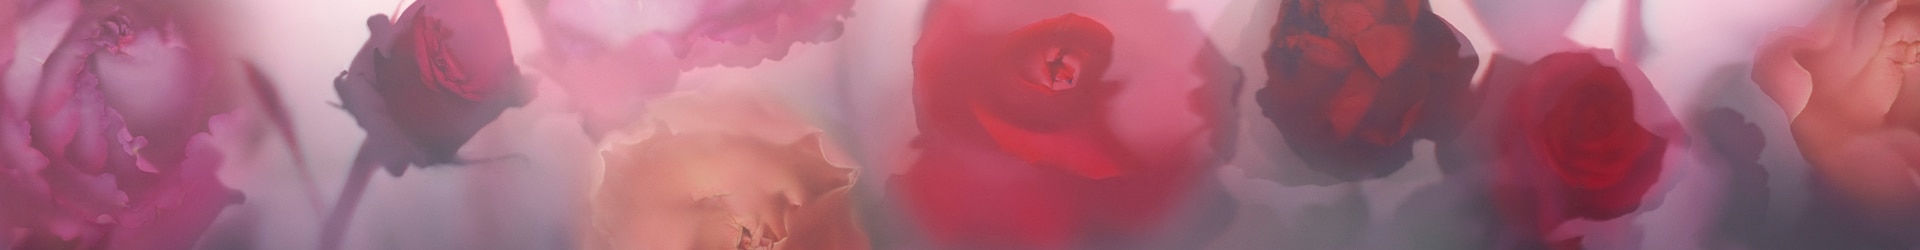 изображение роз